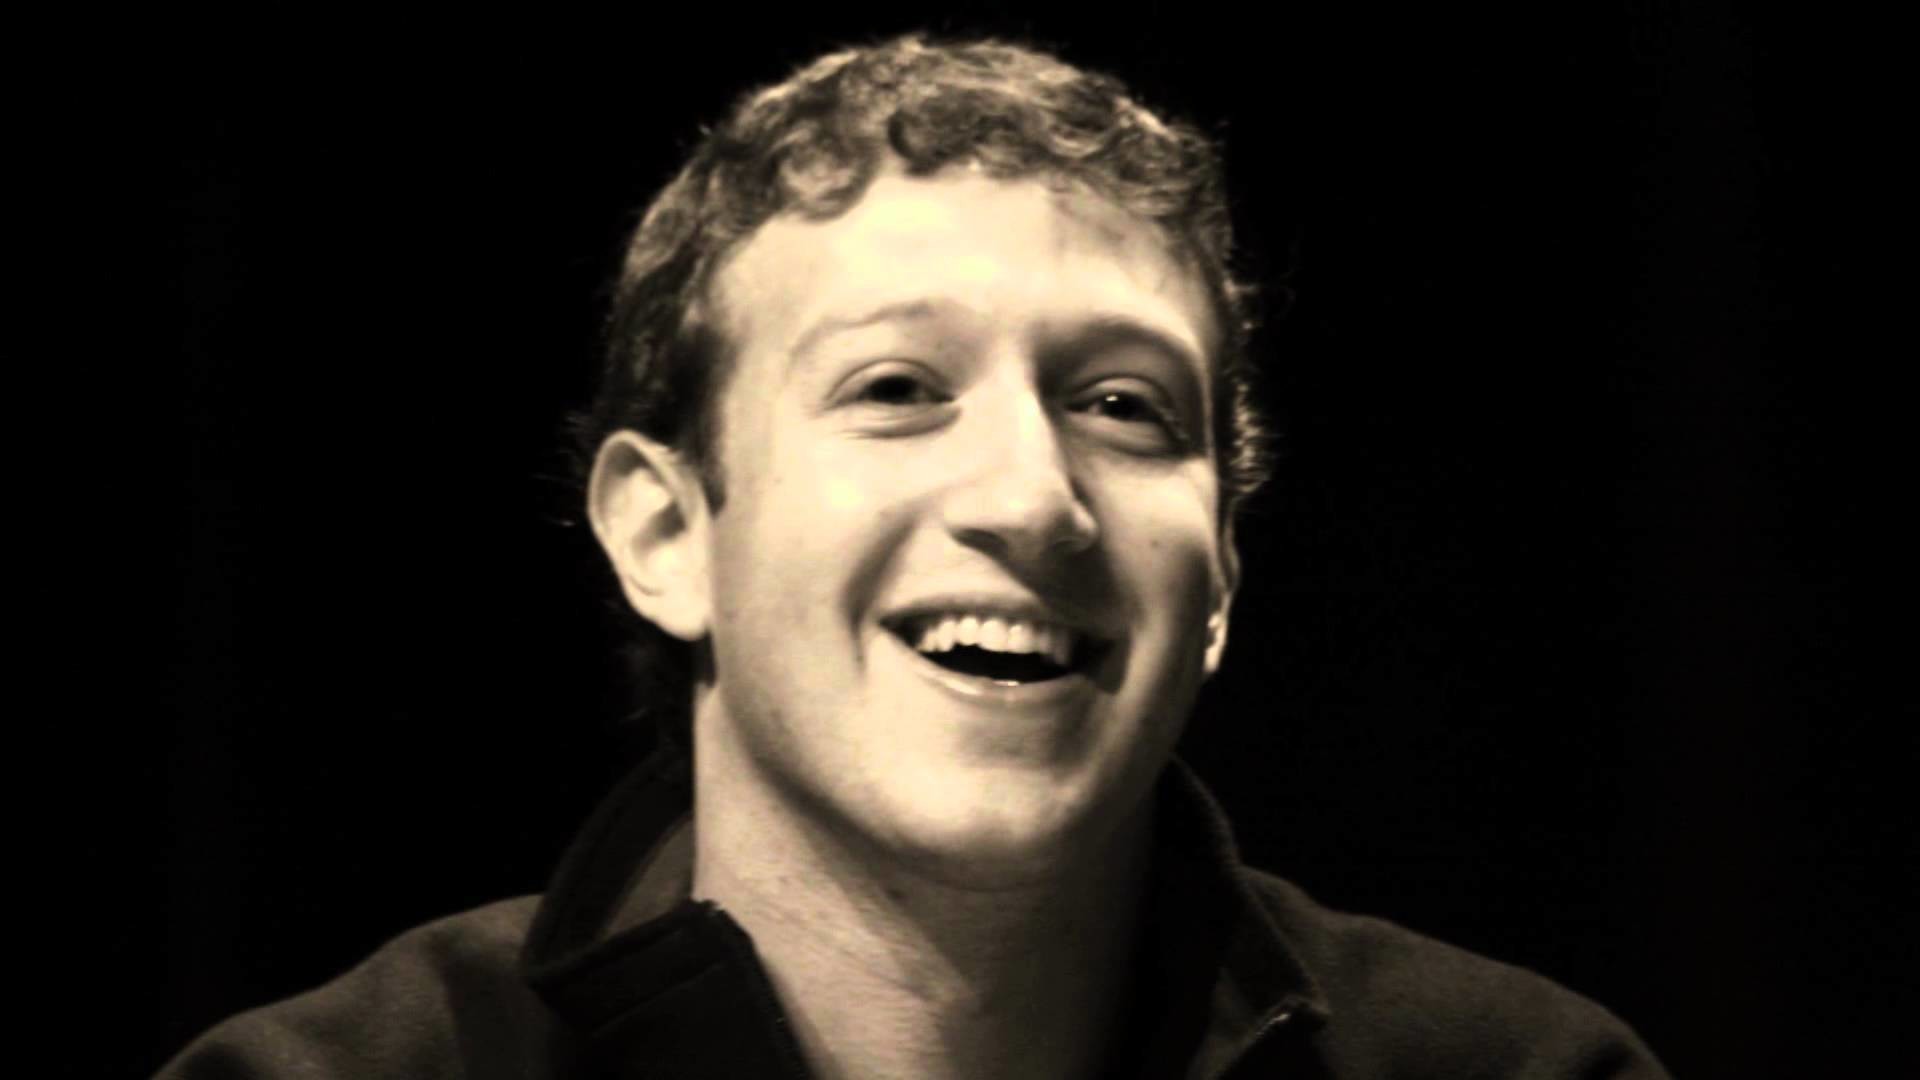 Mark Zuckerberg , HD Wallpaper & Backgrounds